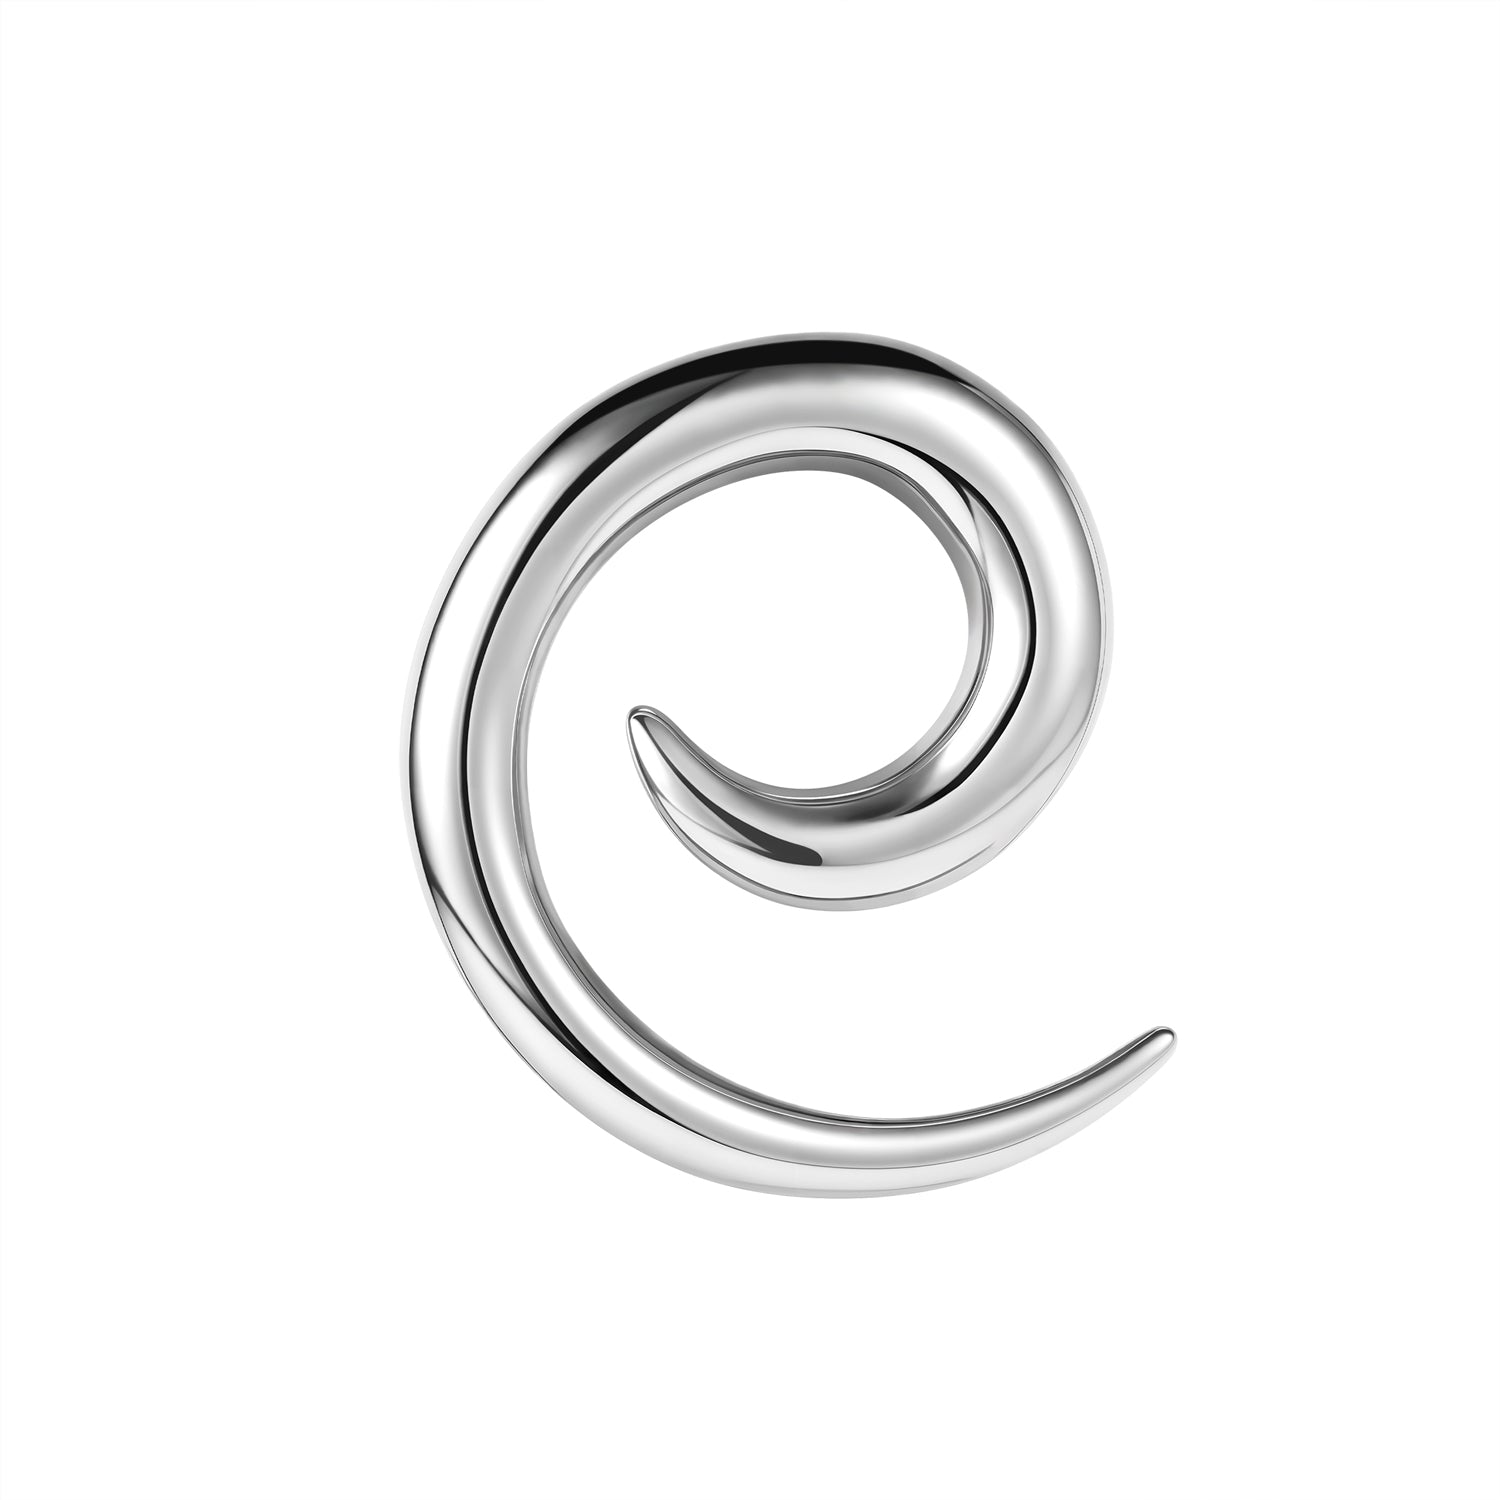 1 Pc 2.5-6mm Snail Ear Plugs Stretching Earring Spiral Ear Piercing Jewelry